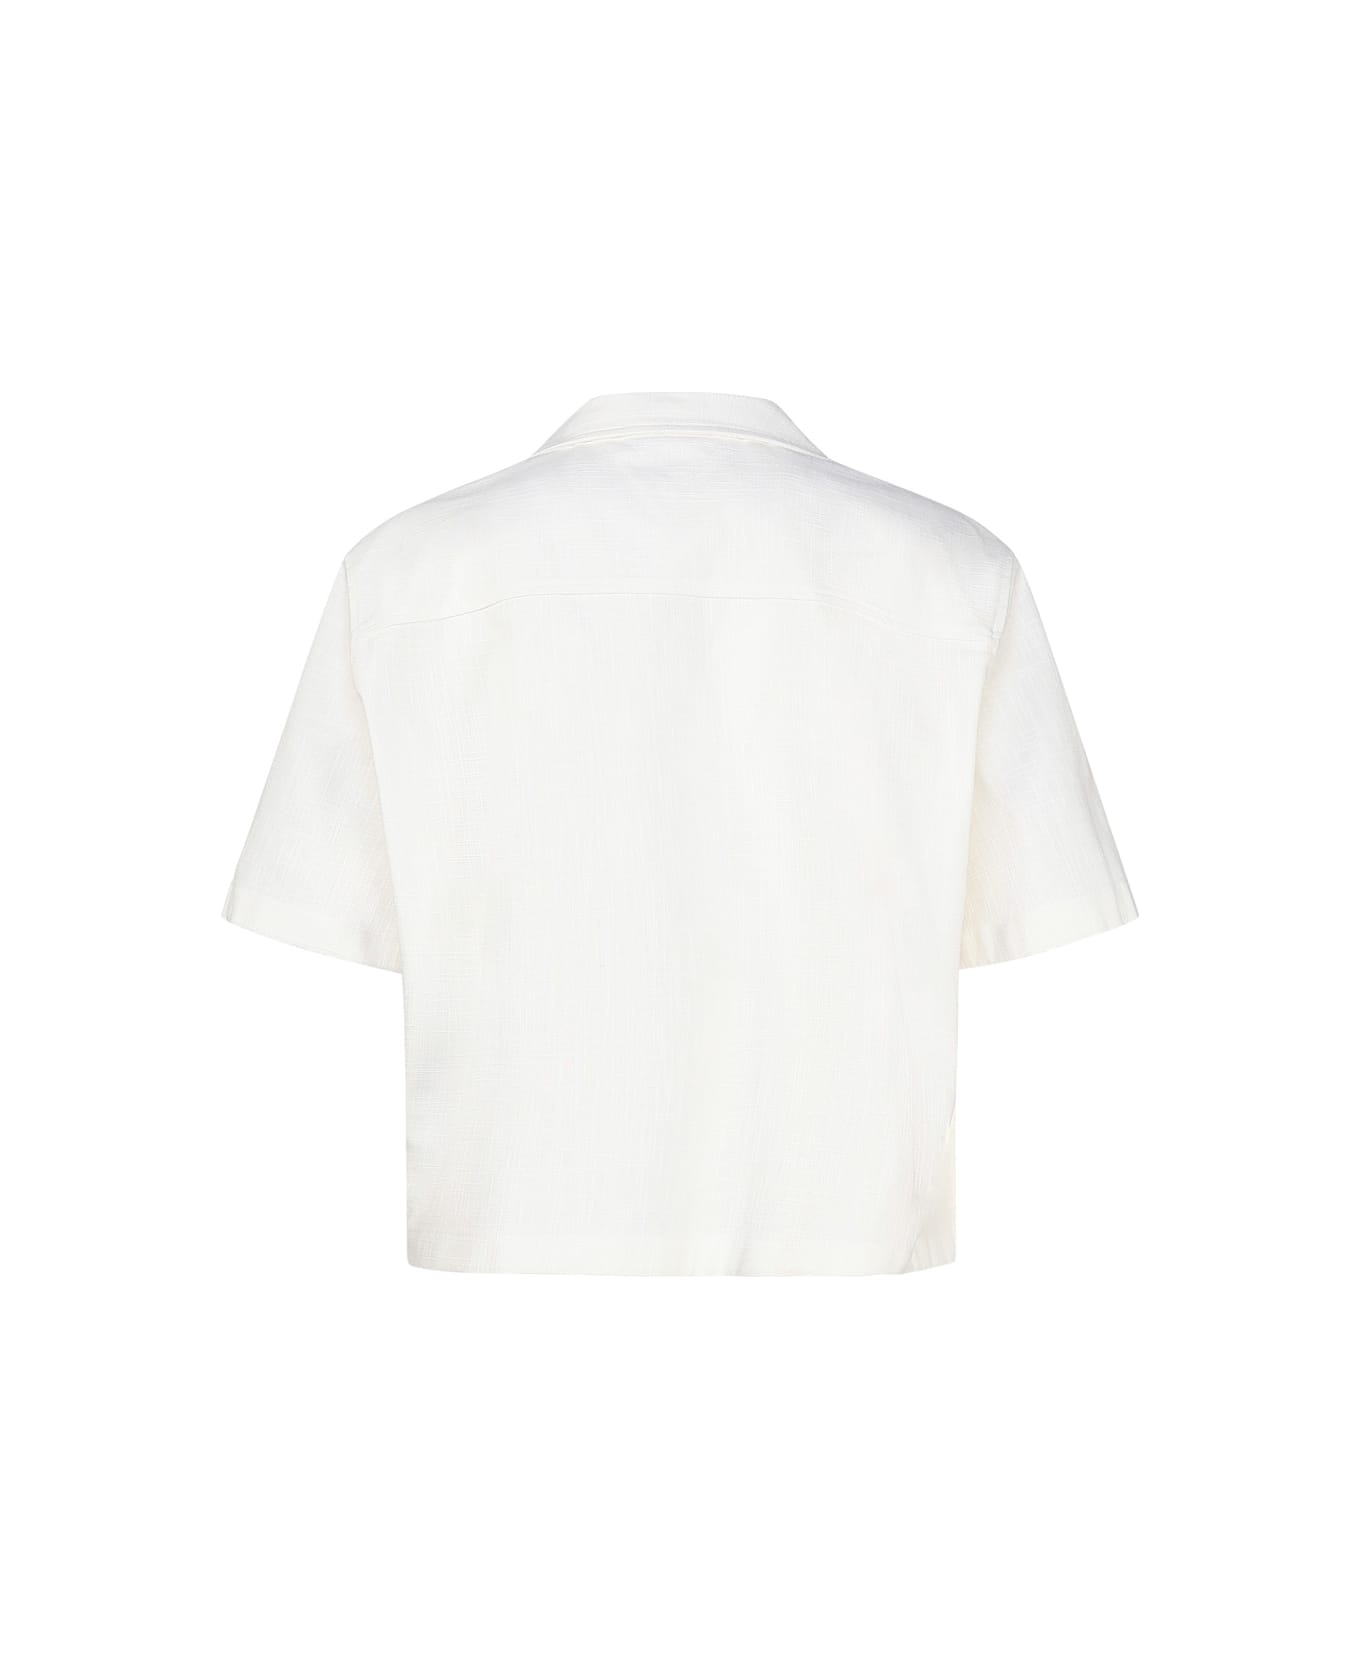 Bottega Veneta Cotton Shirt - Chalk